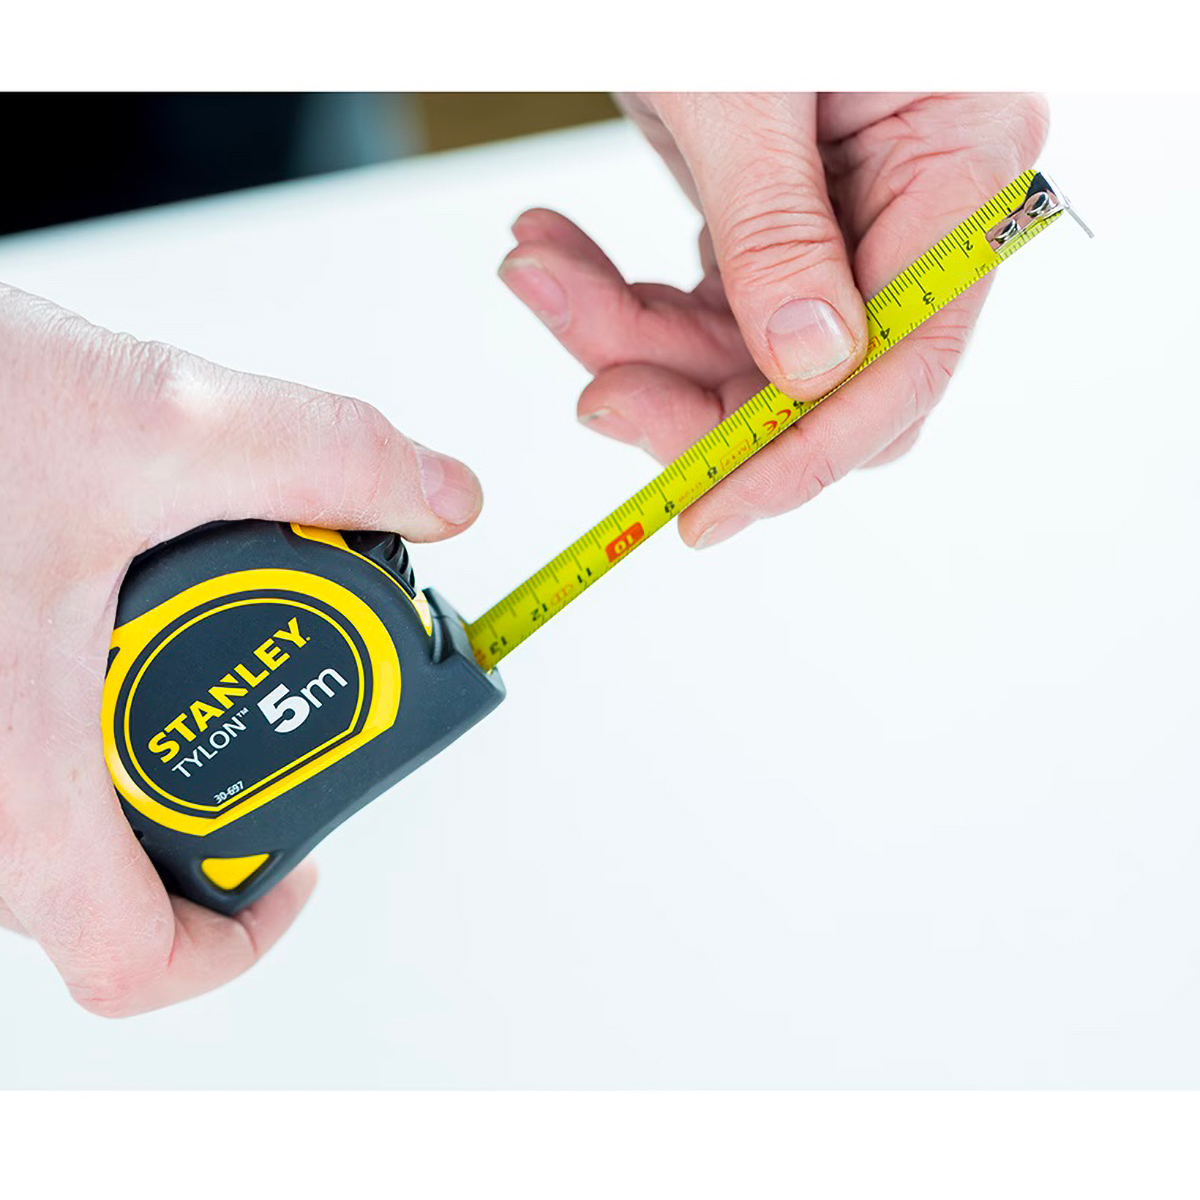 Mètre ruban pour mesurer le tour de poignet -150 cm - enrouleur